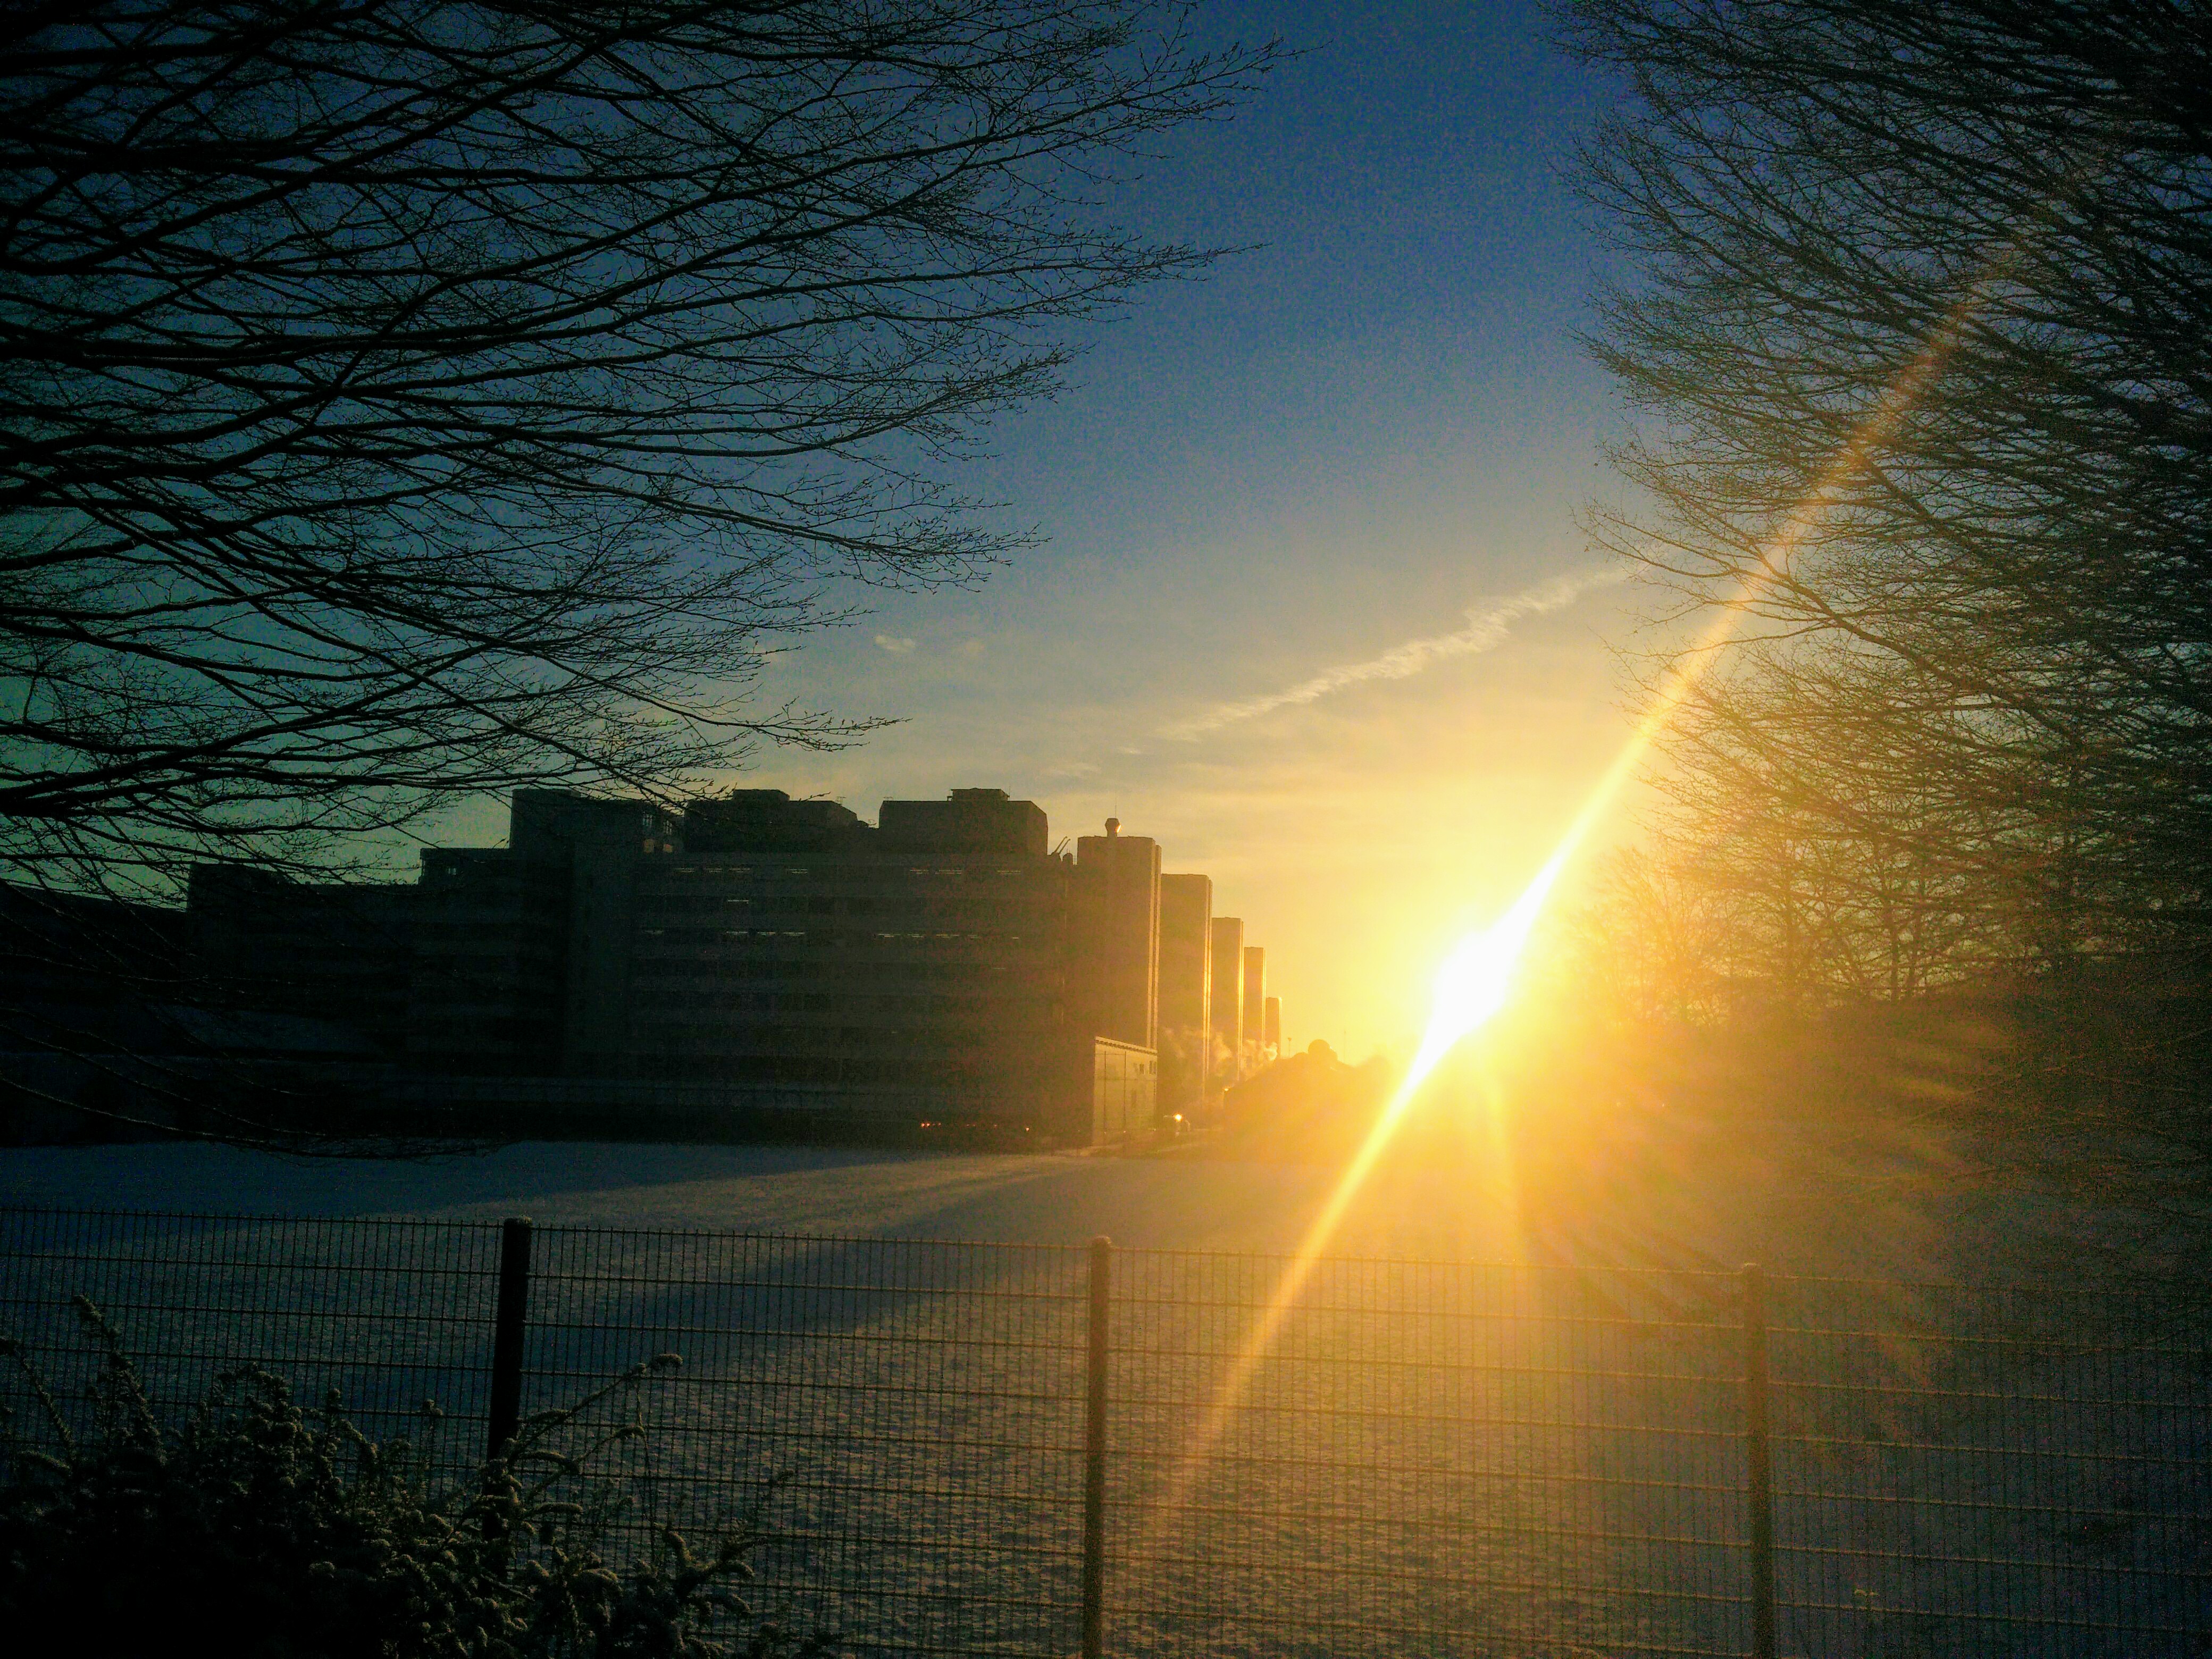 Die Universität Bielefeld im Gegenlicht. Man sieht die Umrisse des Gebäudes und helle Sonnenstrahlen.